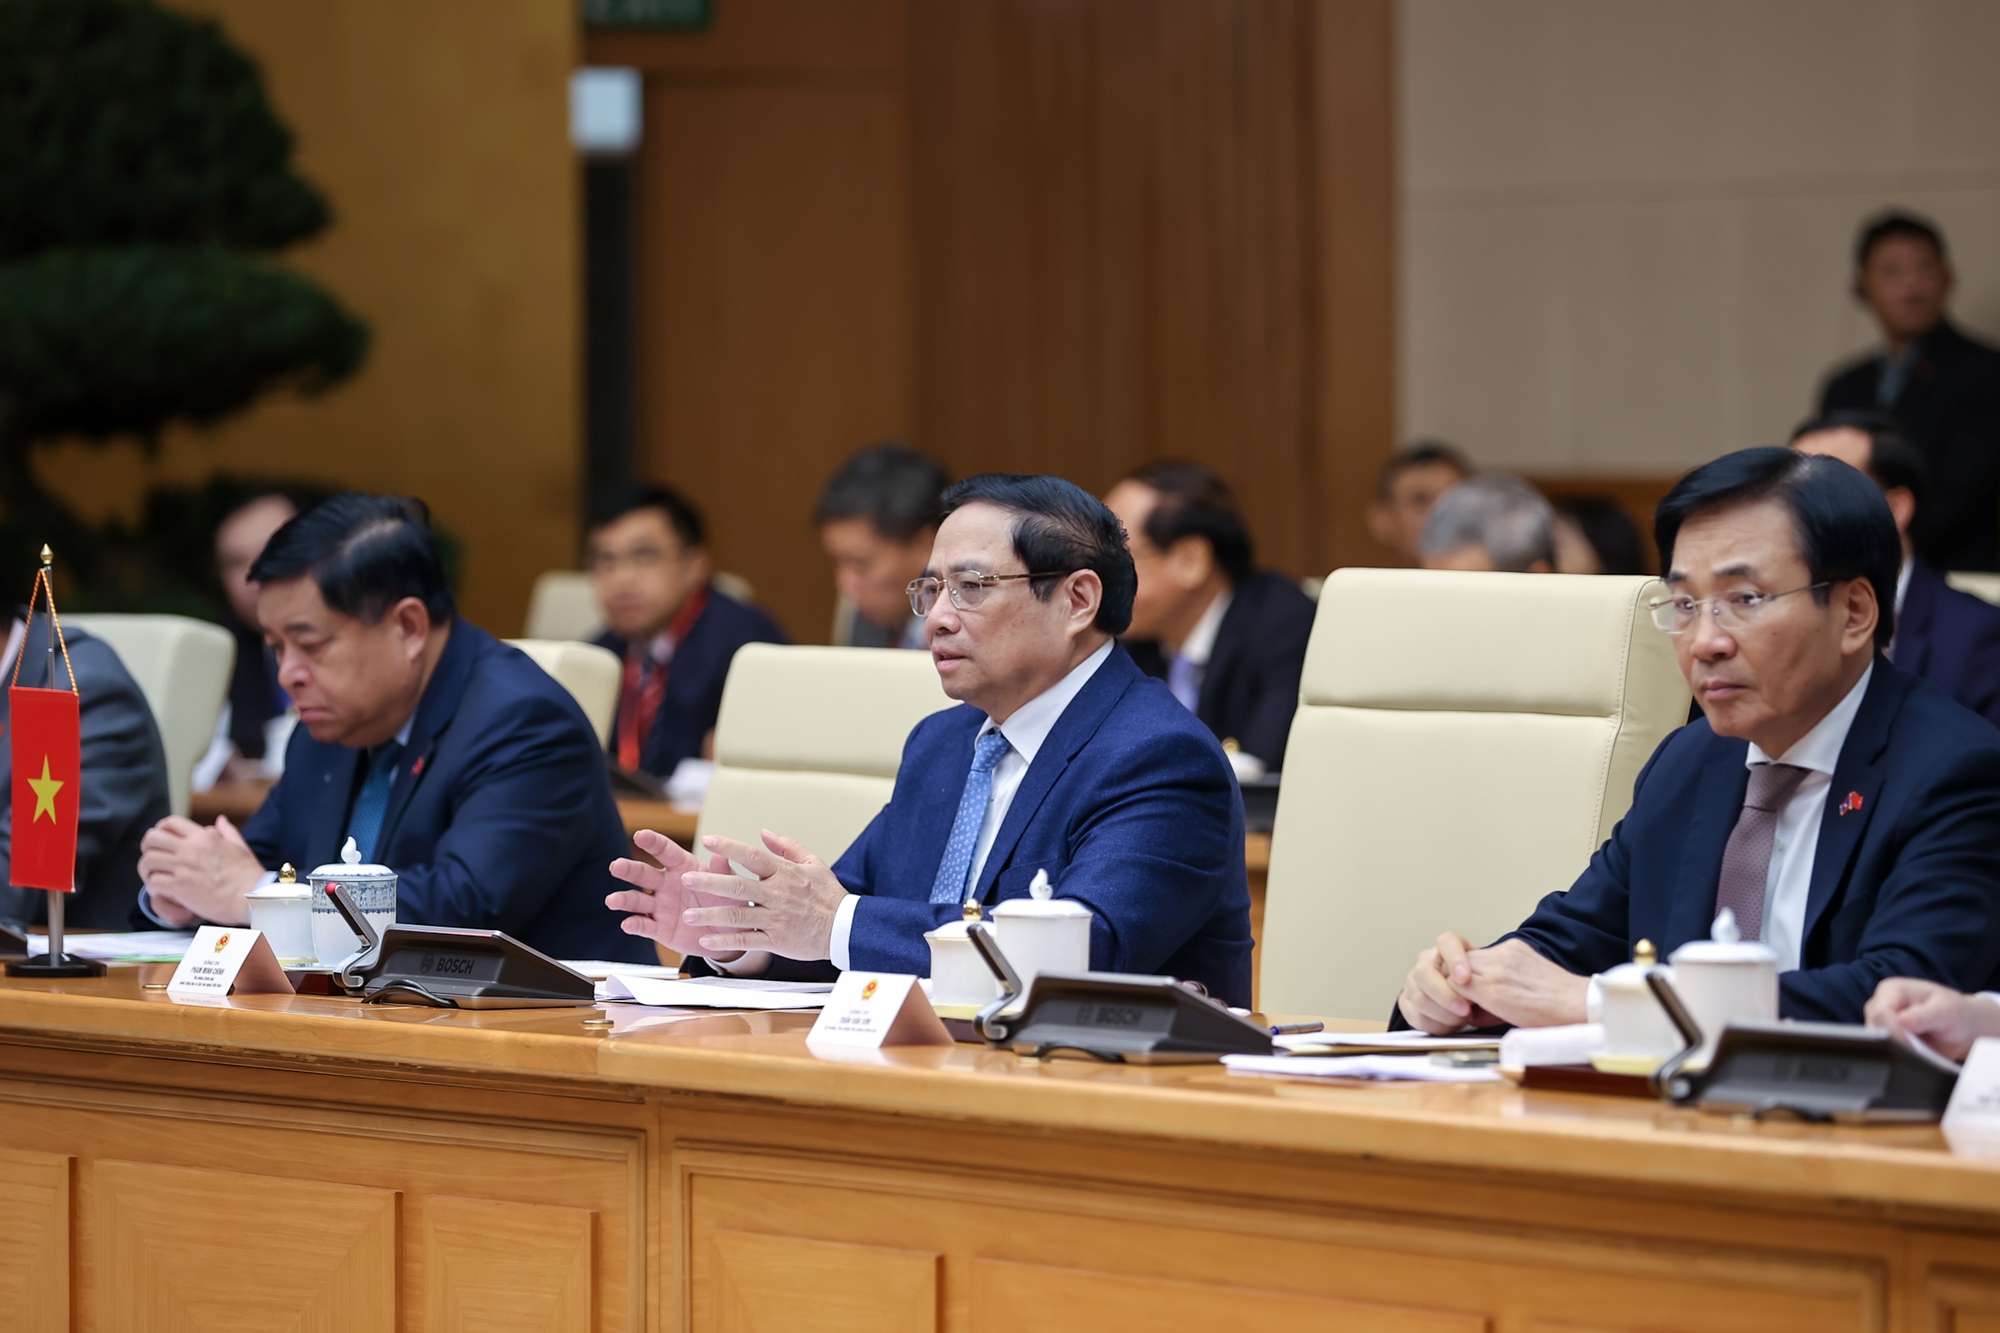 Thủ tướng Phạm Minh Chính và Thủ tướng Lào Sonexay Siphandone vui mừng và nhấn mạnh, trong bối cảnh gặp nhiều khó khăn, thách thức, song hai nước đã triển khai nghiêm túc, hiệu quả các thỏa thuận cấp cao, mang lại nhiều thành tựu trong hợp tác giữa hai nước trên các lĩnh vực - Ảnh: VGP/Nhật Bắc